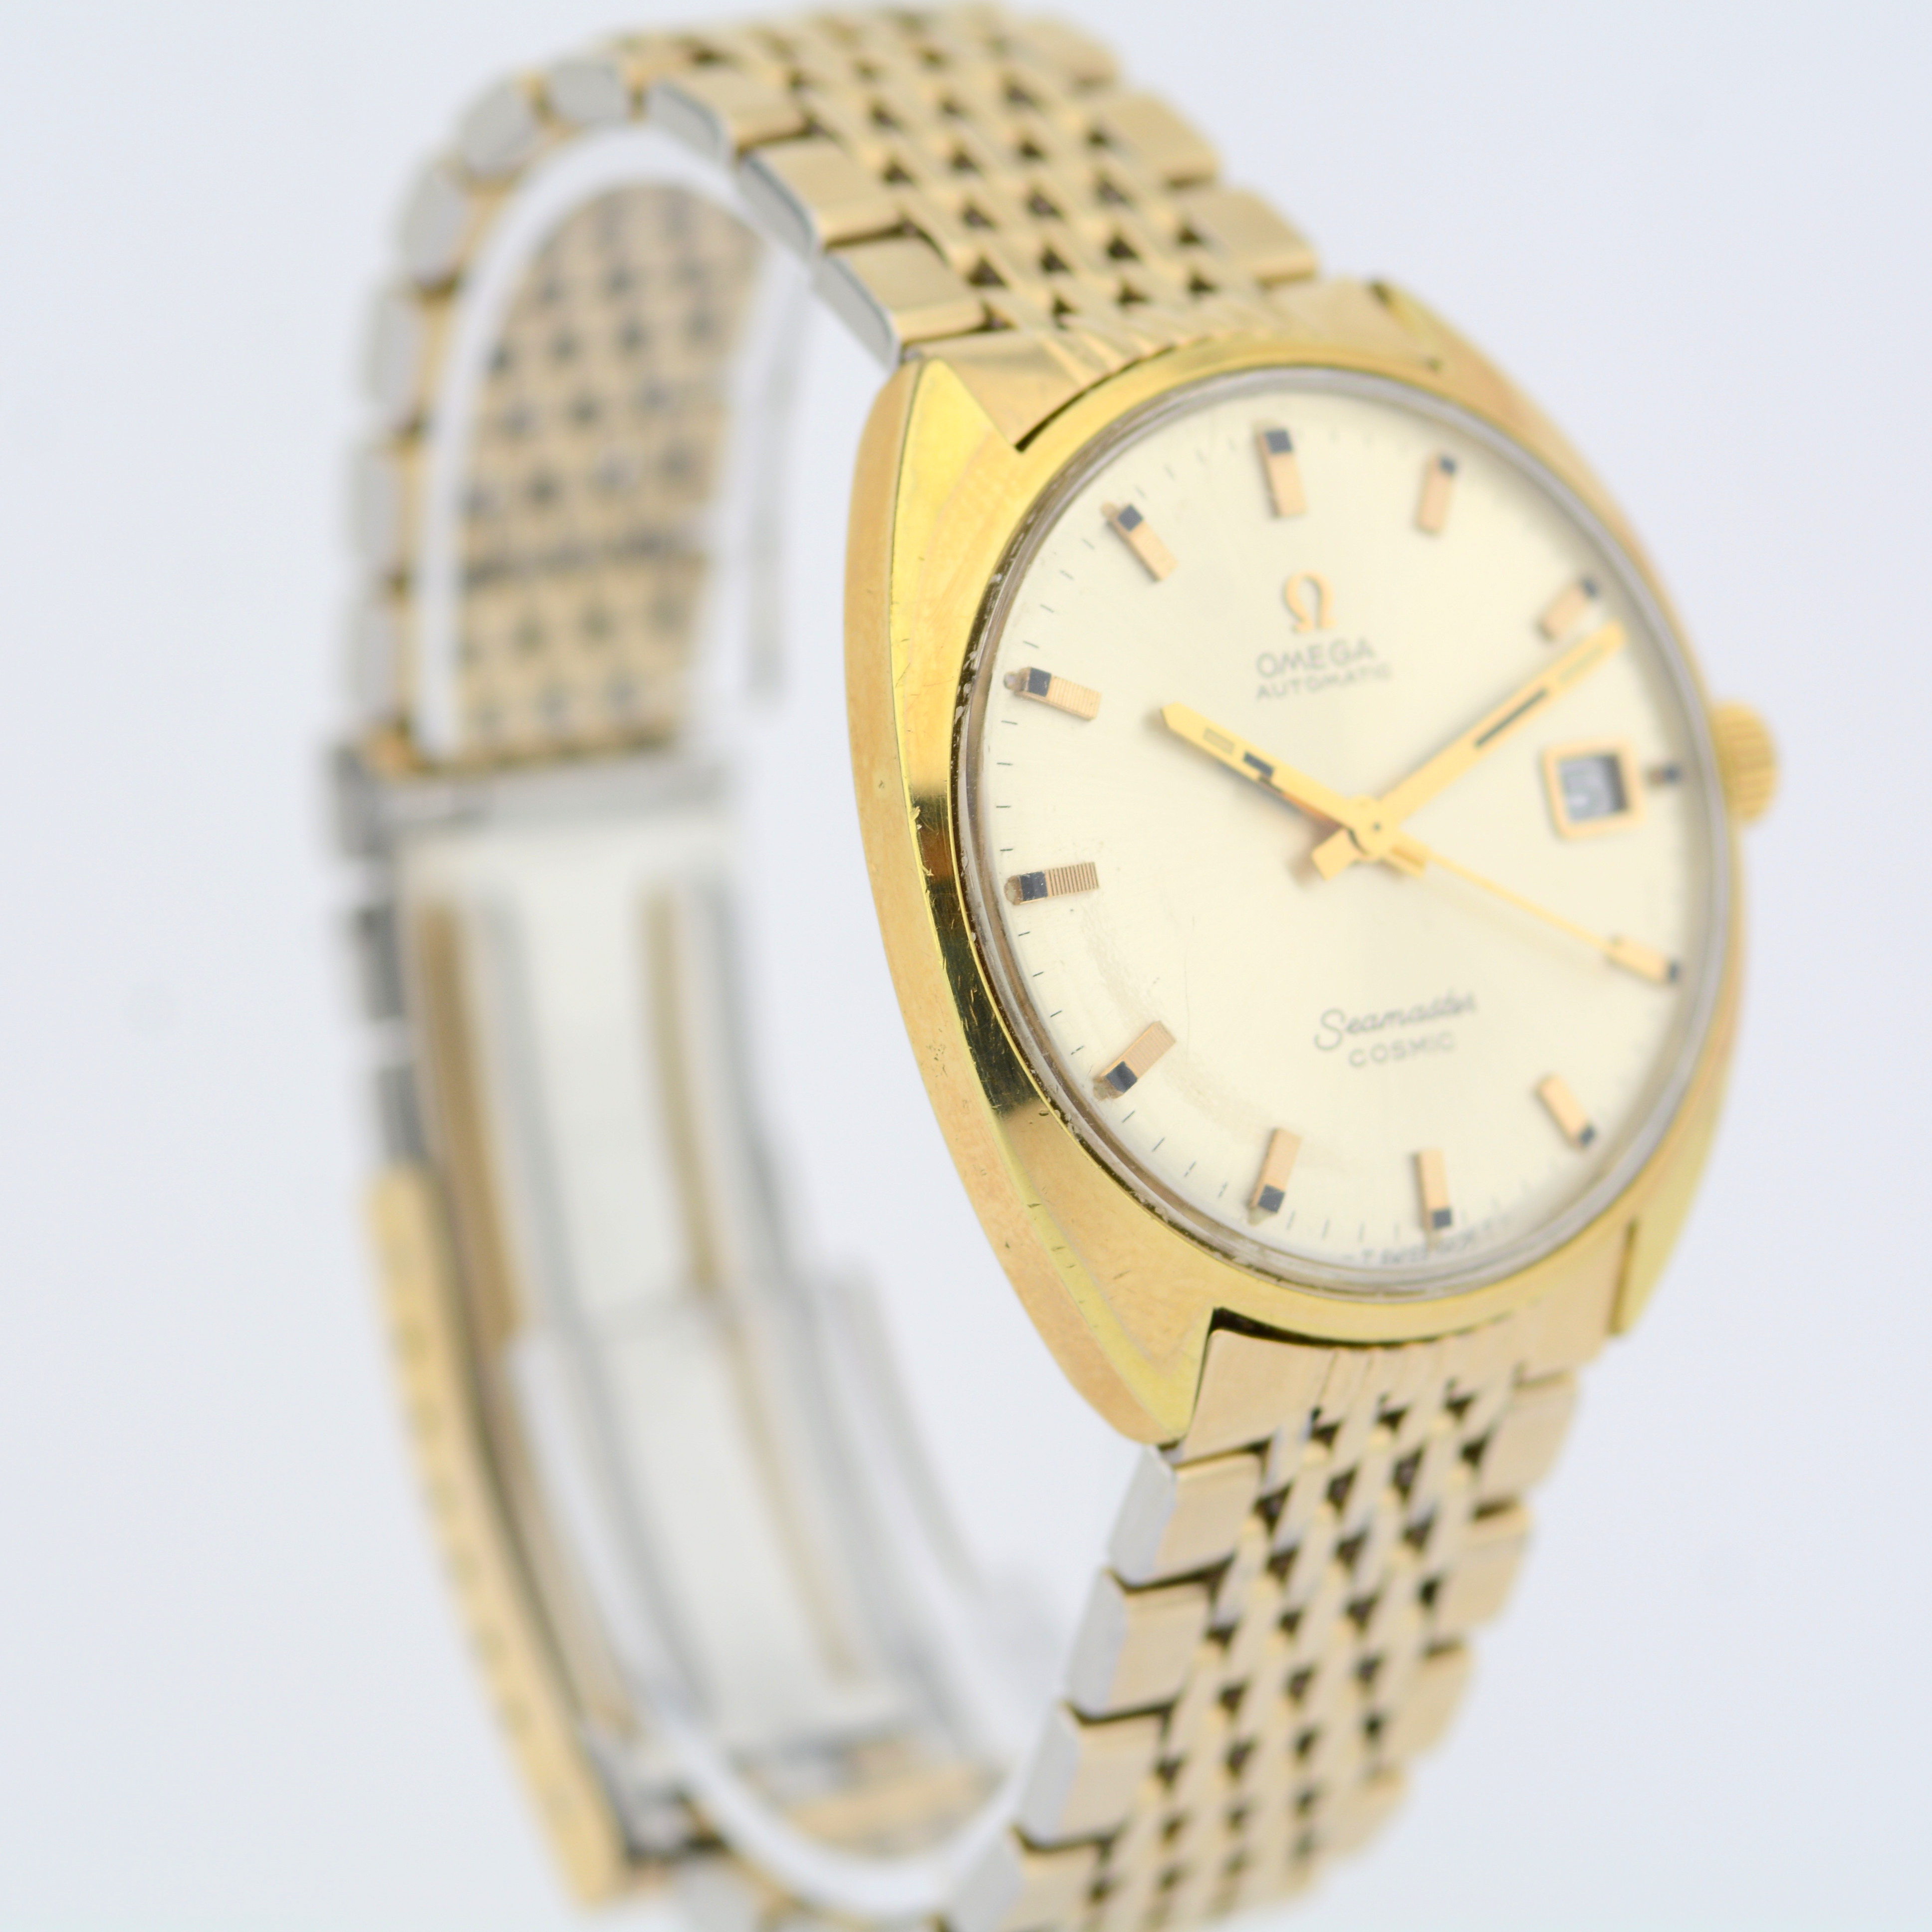 Omega / Seamaster Cosmic Date - Gentlmen's Gold/Steel Wrist Watch - Image 4 of 6